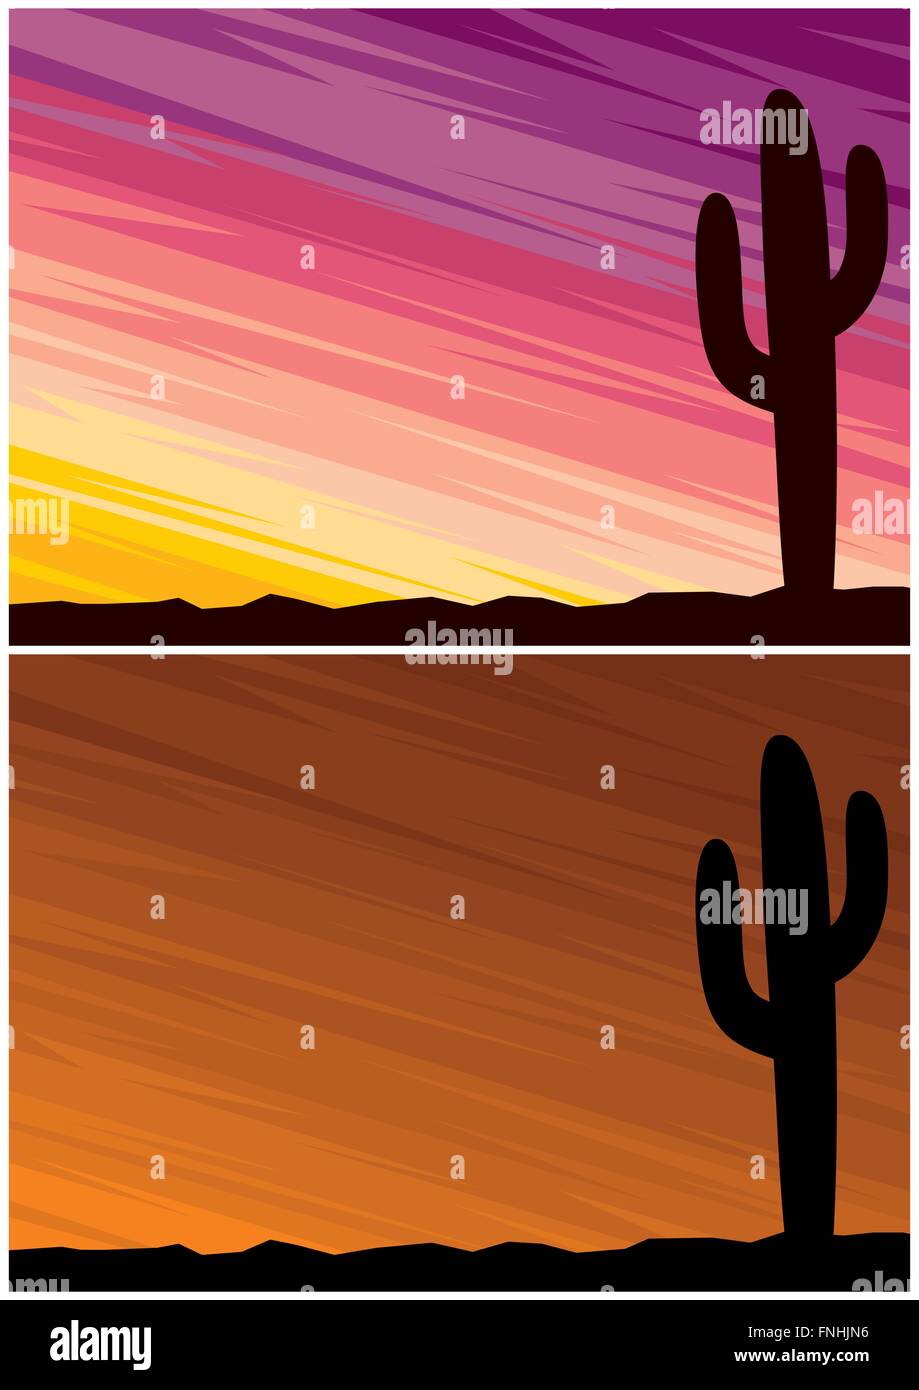 Comic-Landschaft der Wüste in der Abenddämmerung. 2 Farb-Variationen. A4-Proportionen. Stock Vektor